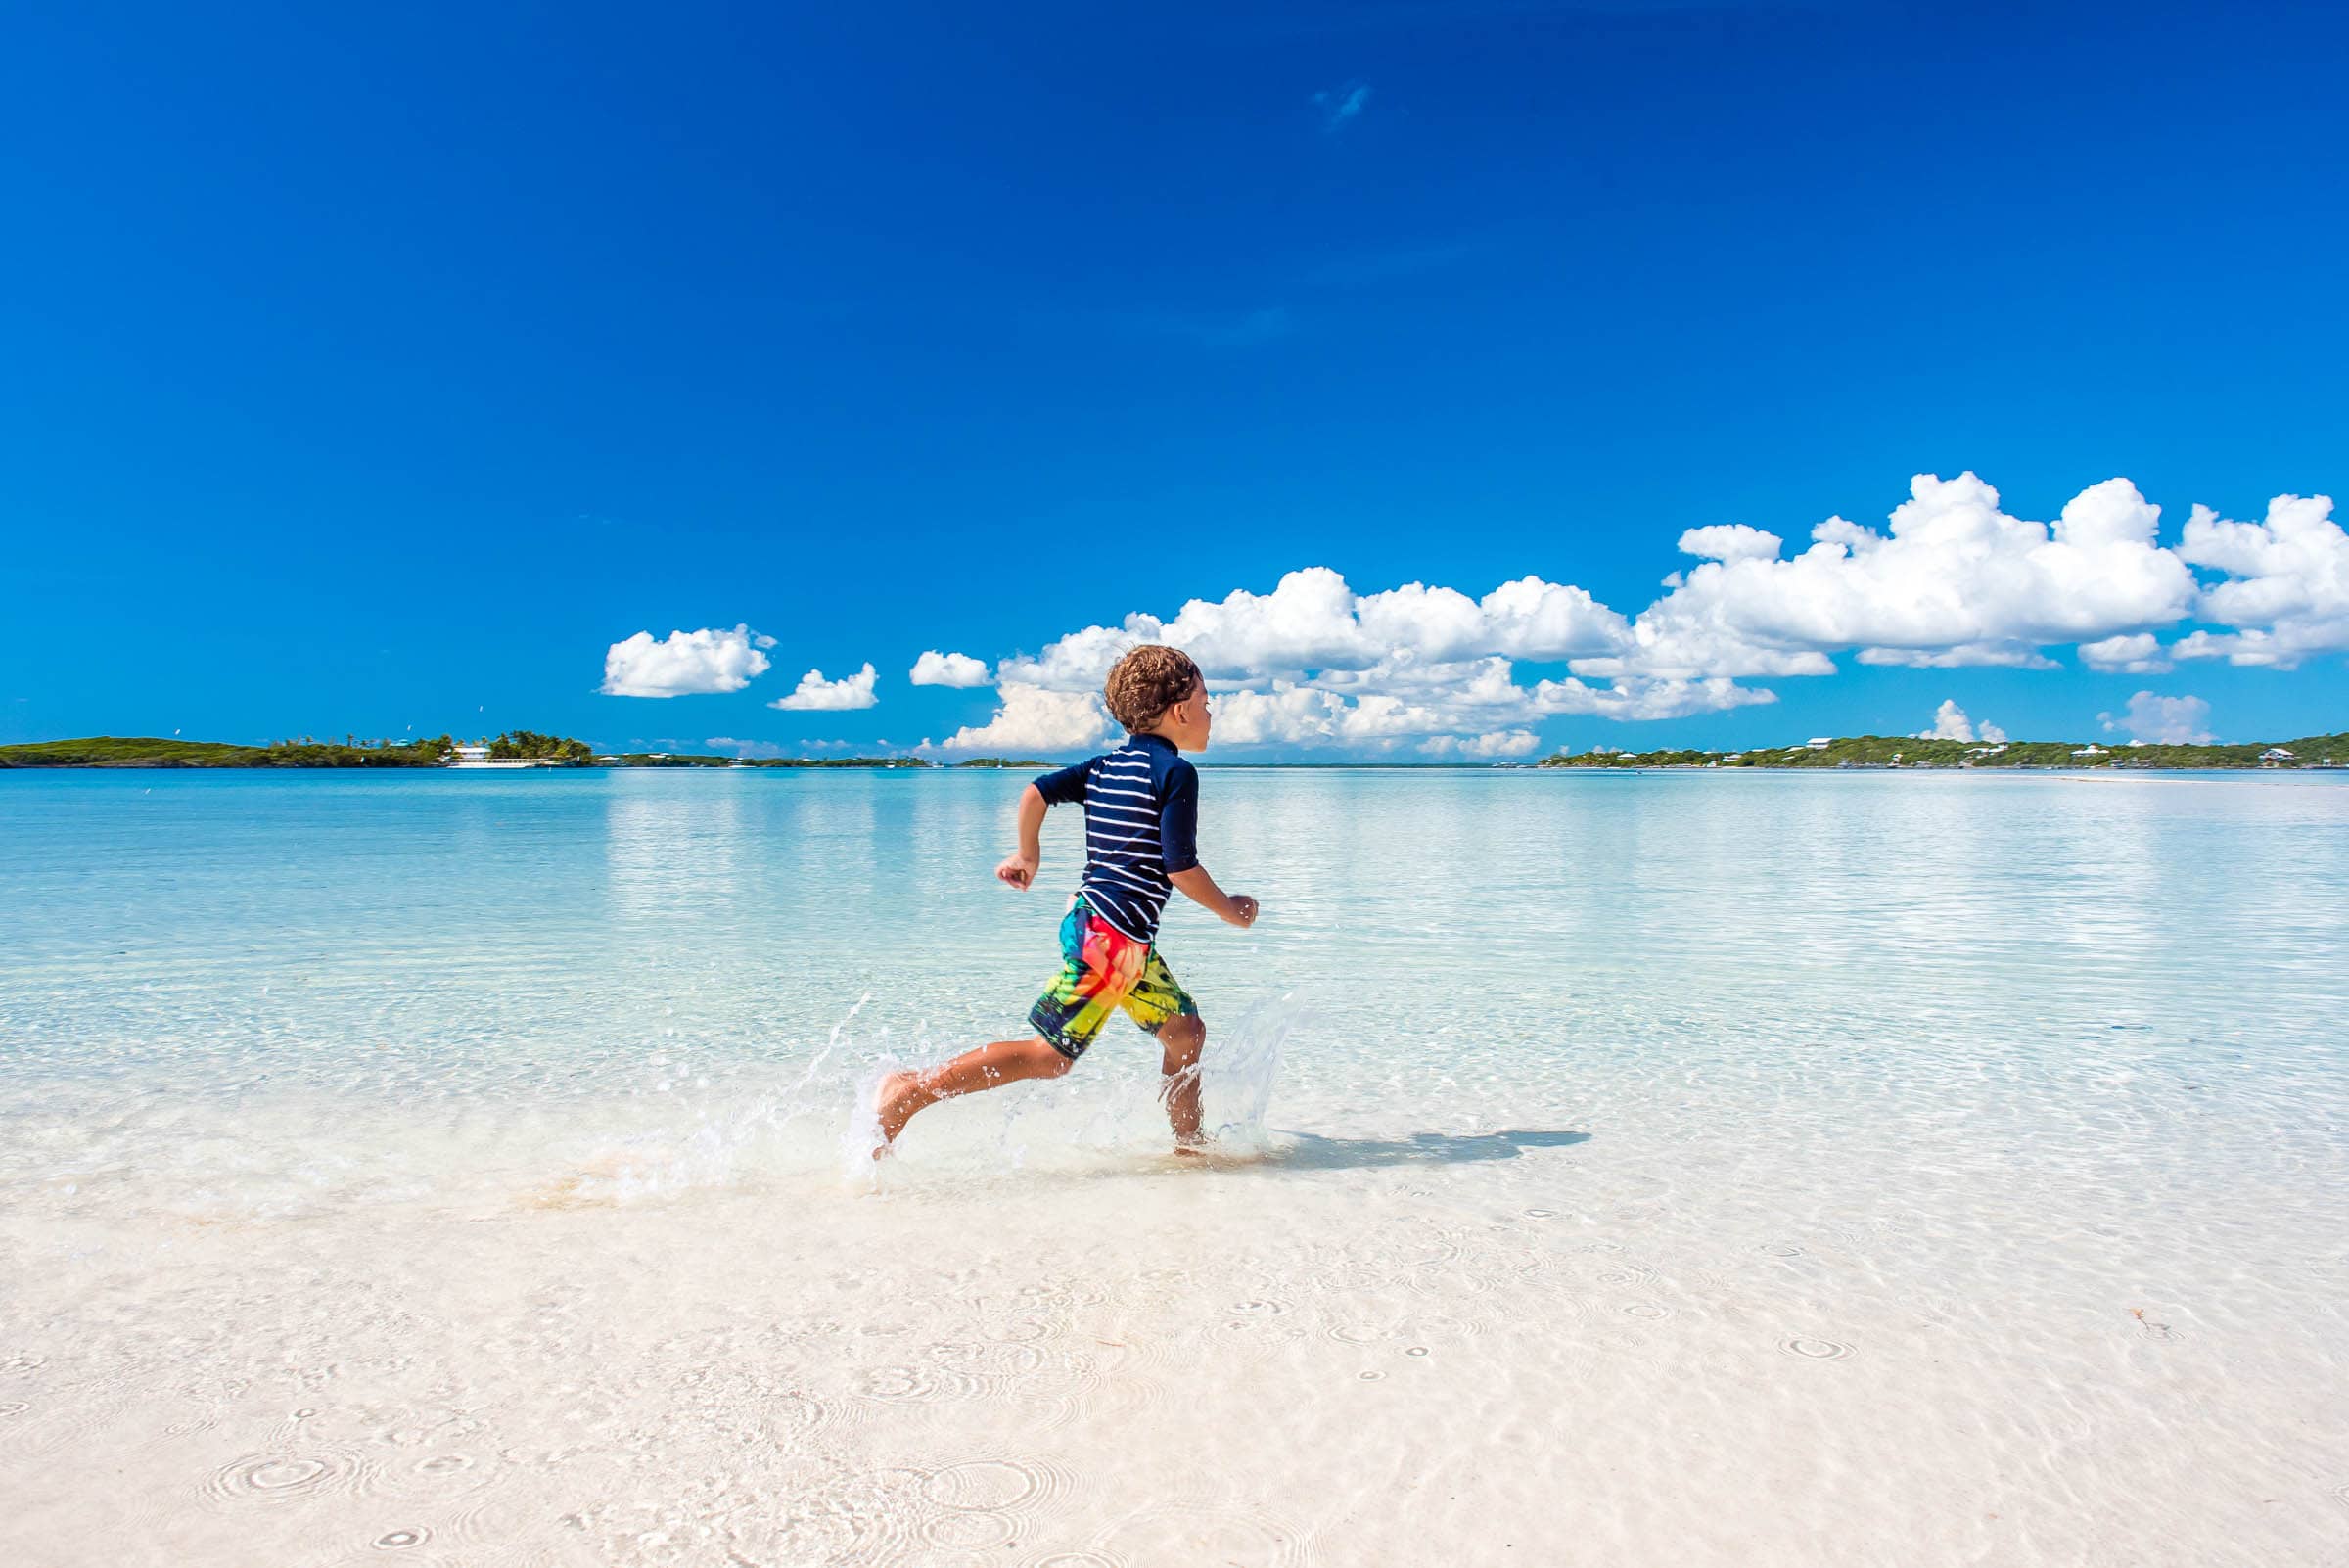 Running on Tahiti Beach, Elbow Cay, Abaco, The Bahamas by Patrick Bennett